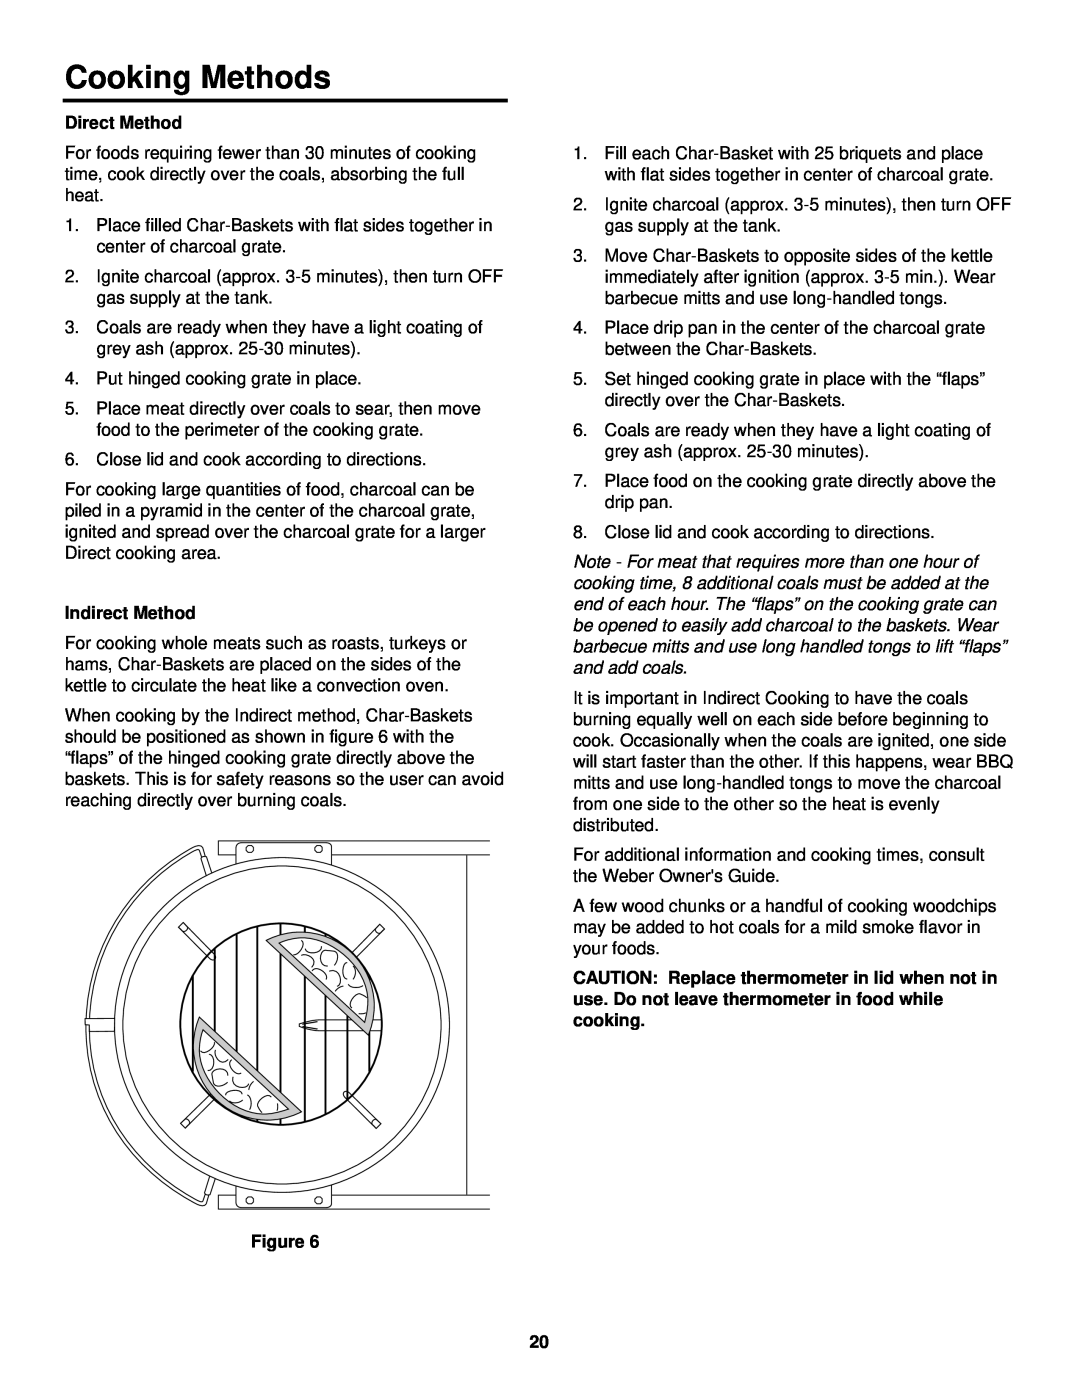 Weber Burner owner manual Cooking Methods, Direct Method, Indirect Method 